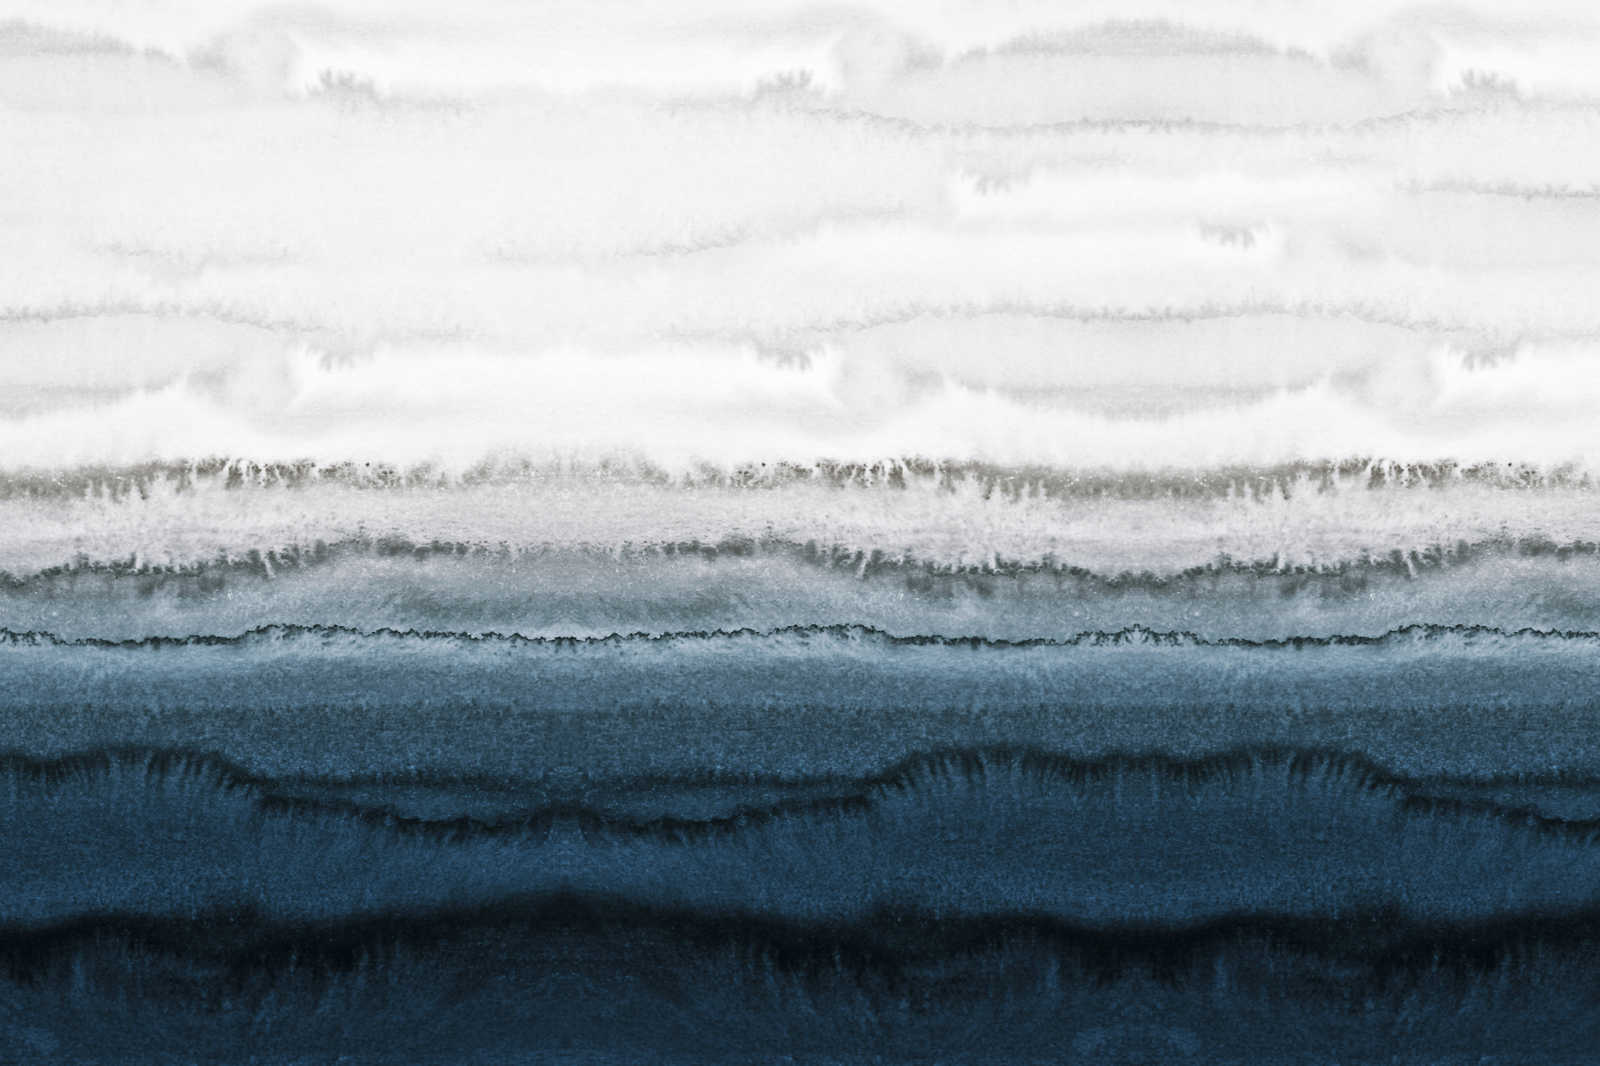             Leinwandbild Gezeiten im minimalistischen Aquarell Stil – 1,20 m x 0,80 m
        